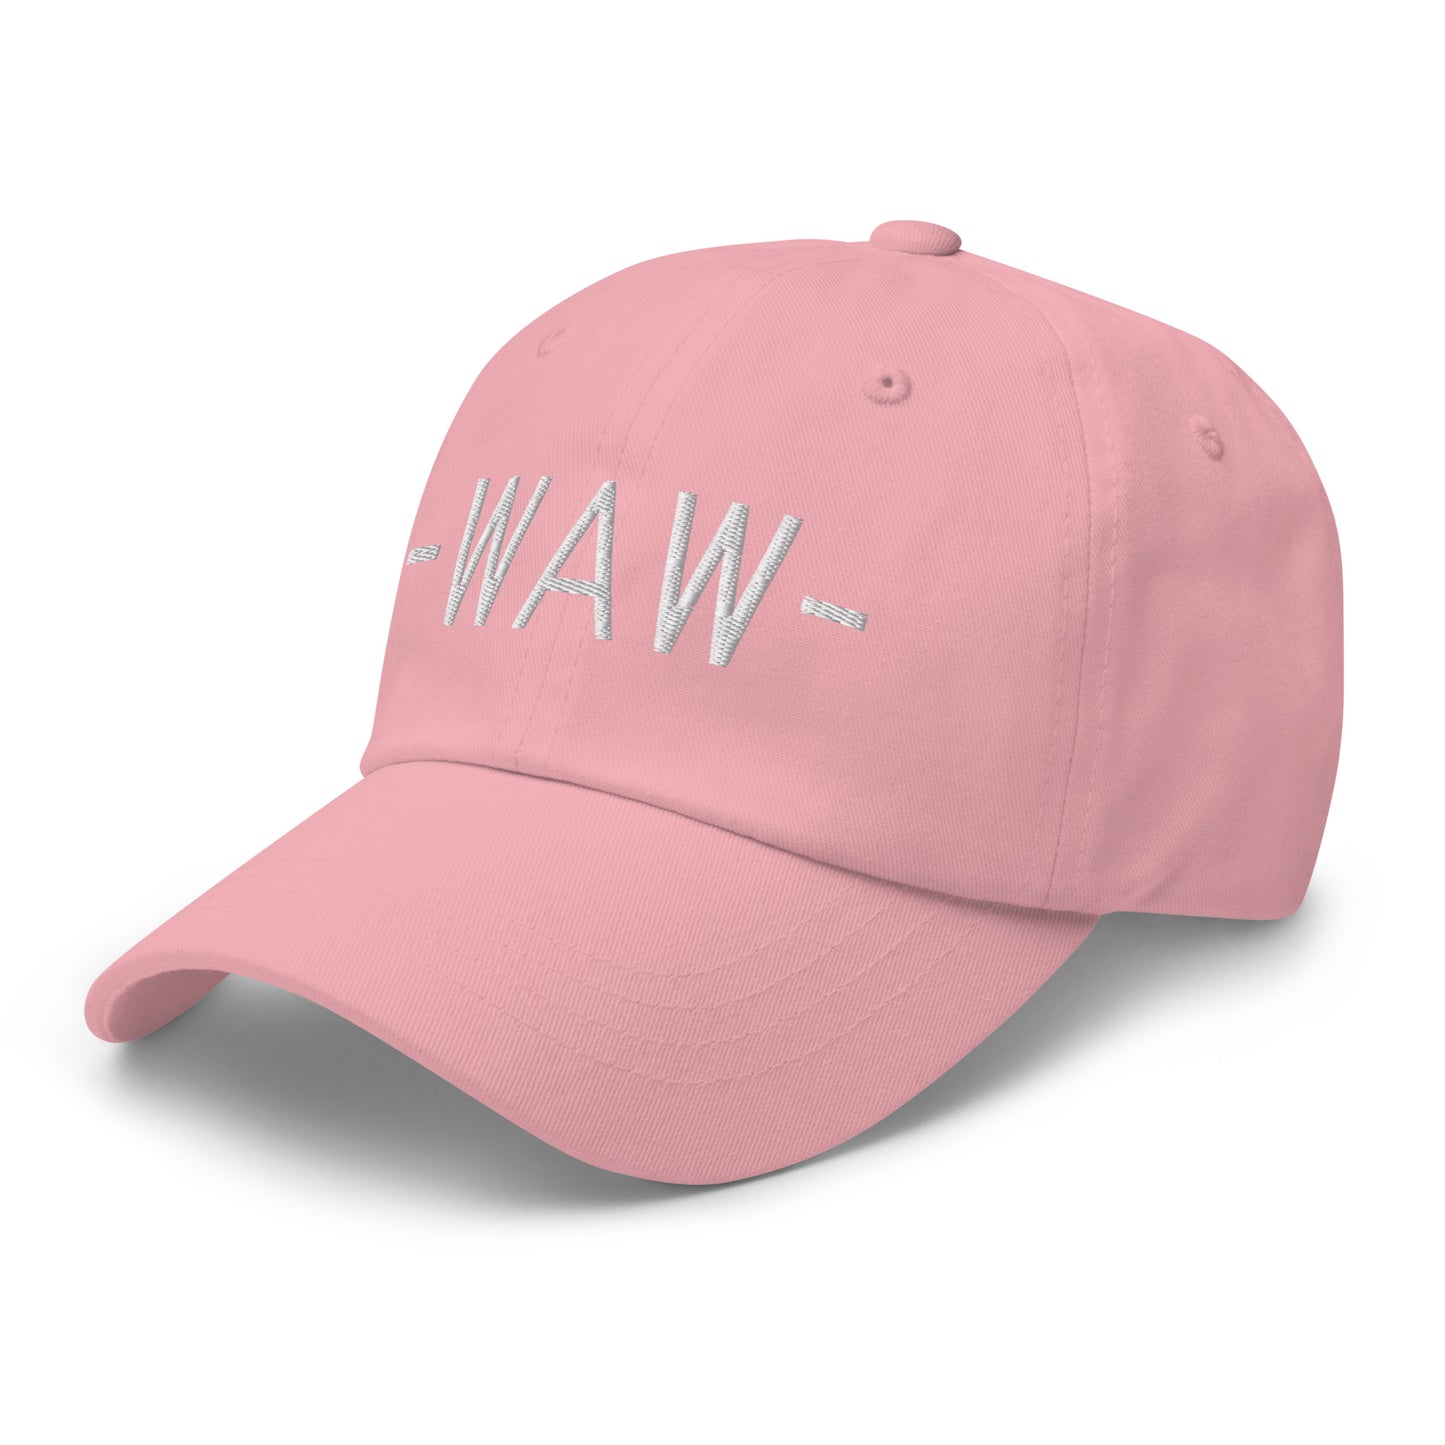 Souvenir Baseball Cap - White • WAW Warsaw • YHM Designs - Image 26